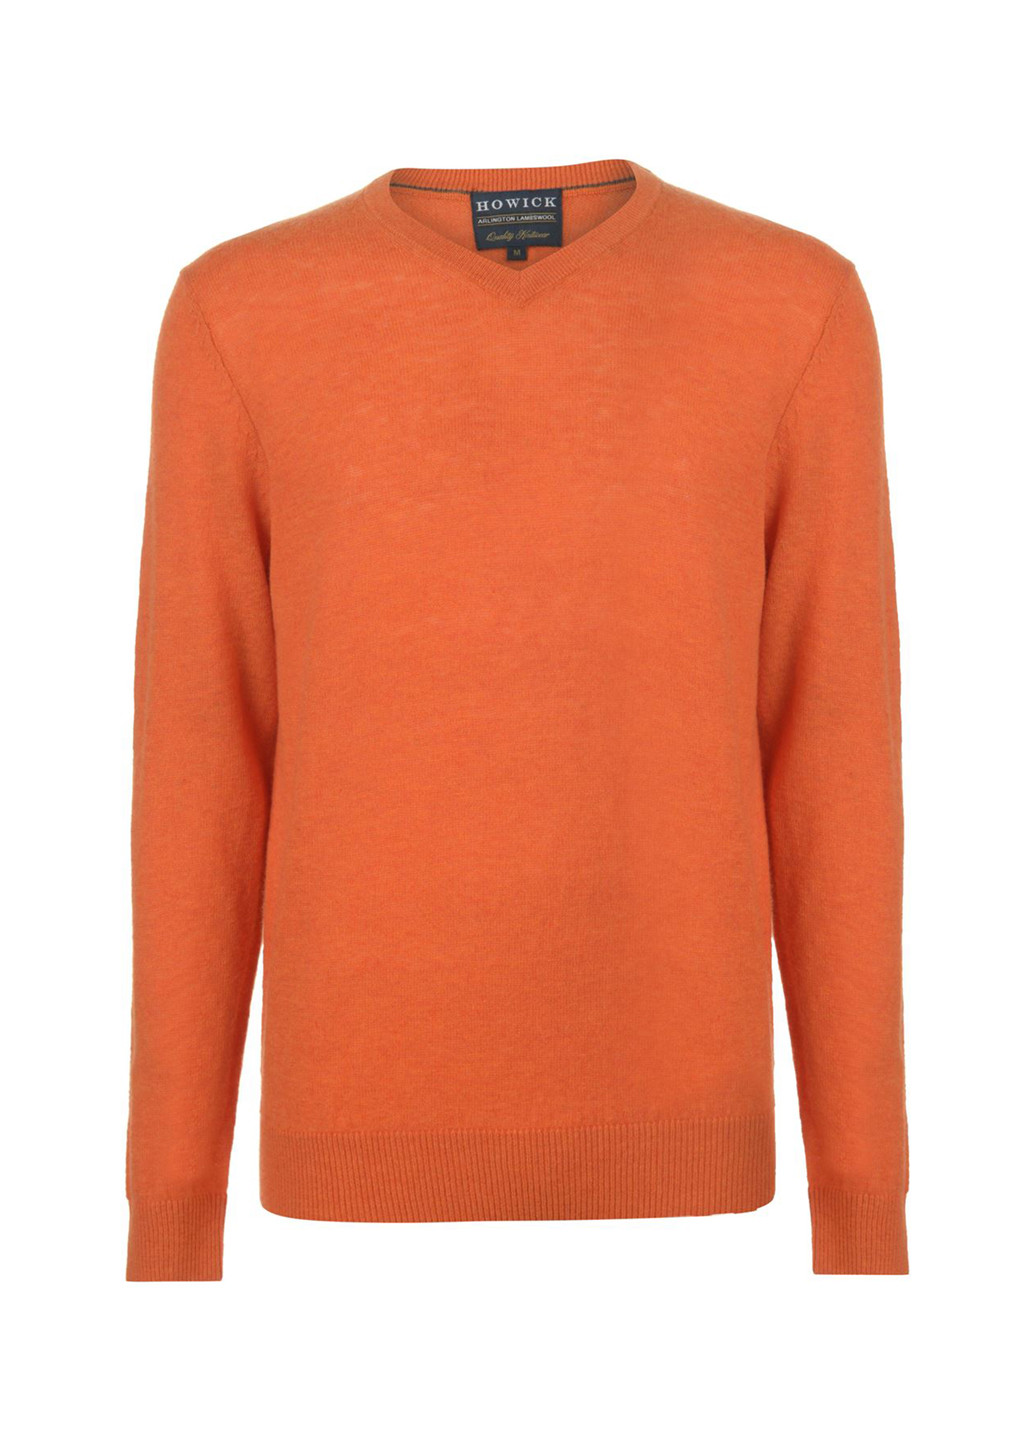 Оранжевый демисезонный пуловер пуловер Howick